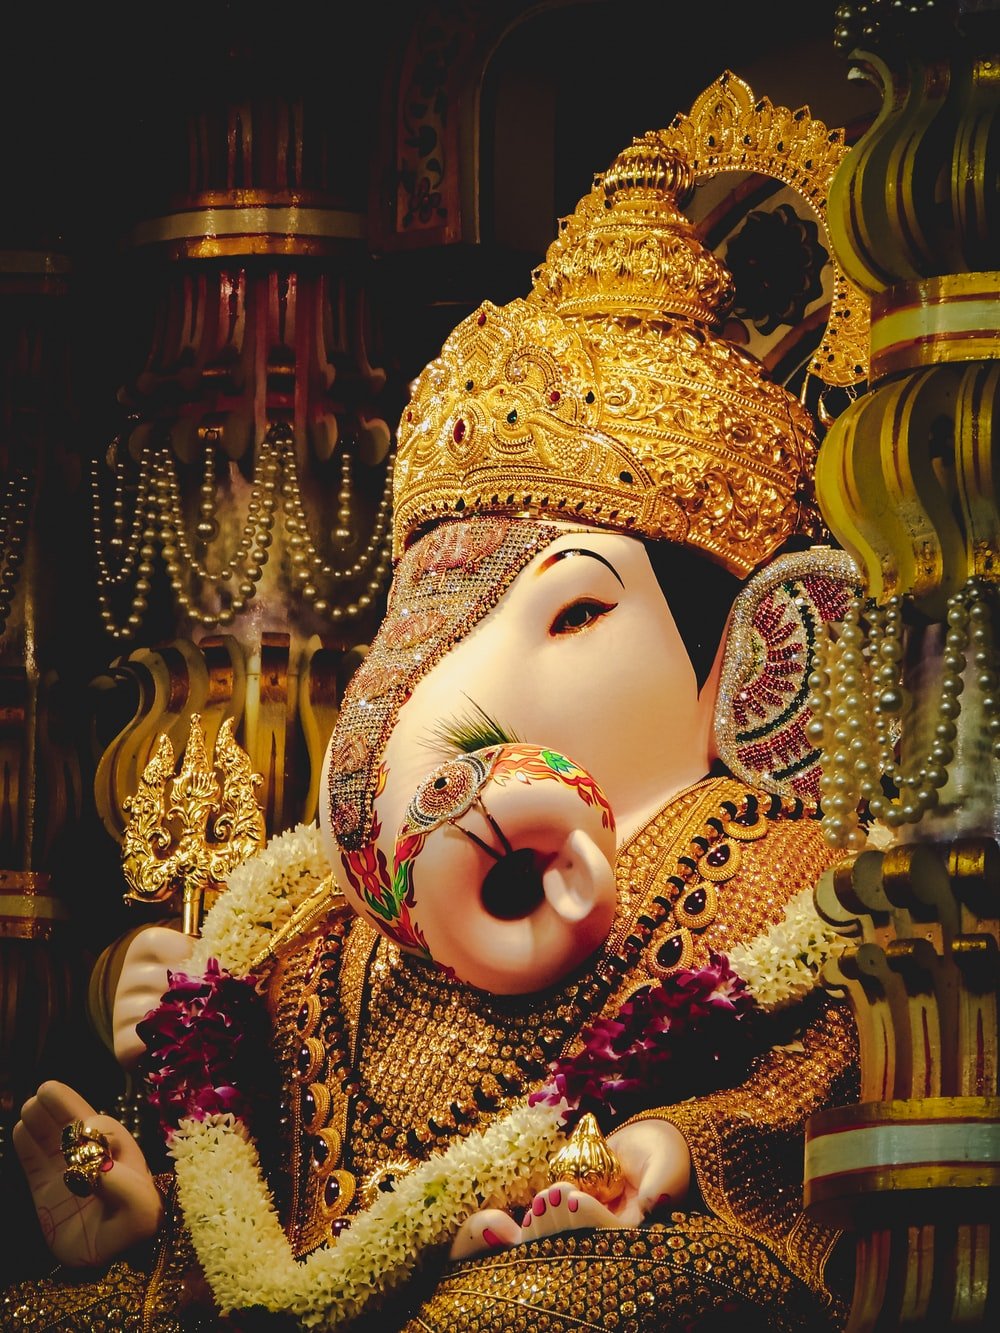 Lord Ganesha figurine photo Free Pune Image on